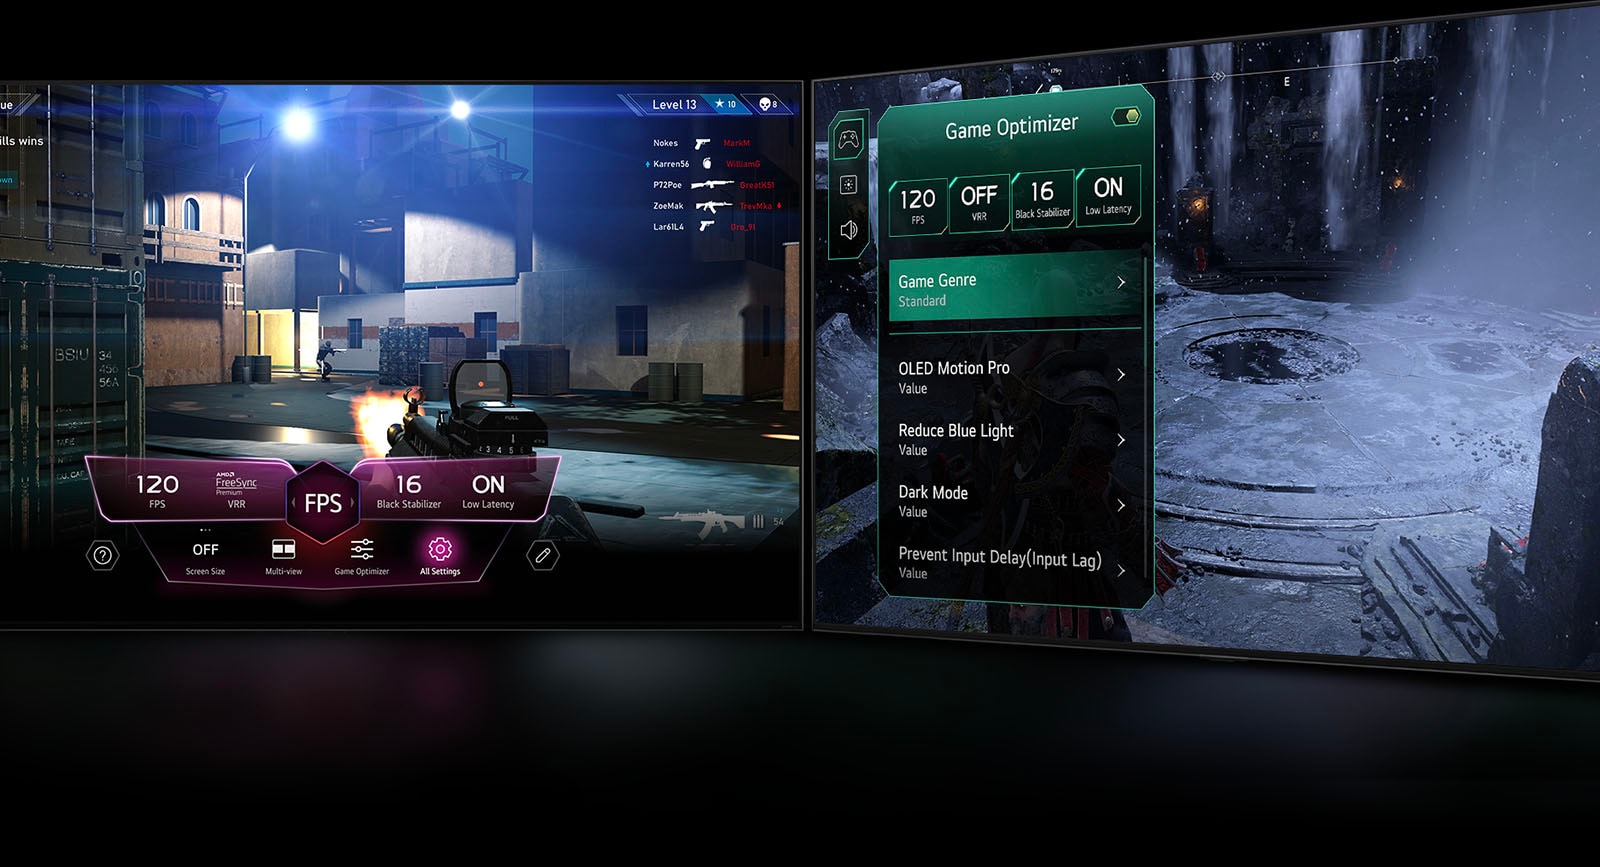 Μια σκηνή παιχνιδιού FPS με το Game Dashboard να εμφανίζεται πάνω από την οθόνη στη διάρκεια του παιχνιδιού. Μια σκοτεινή, χειμερινή σκηνή με το μενού Game Optimizer να εμφανίζεται πάνω από το παιχνίδι.